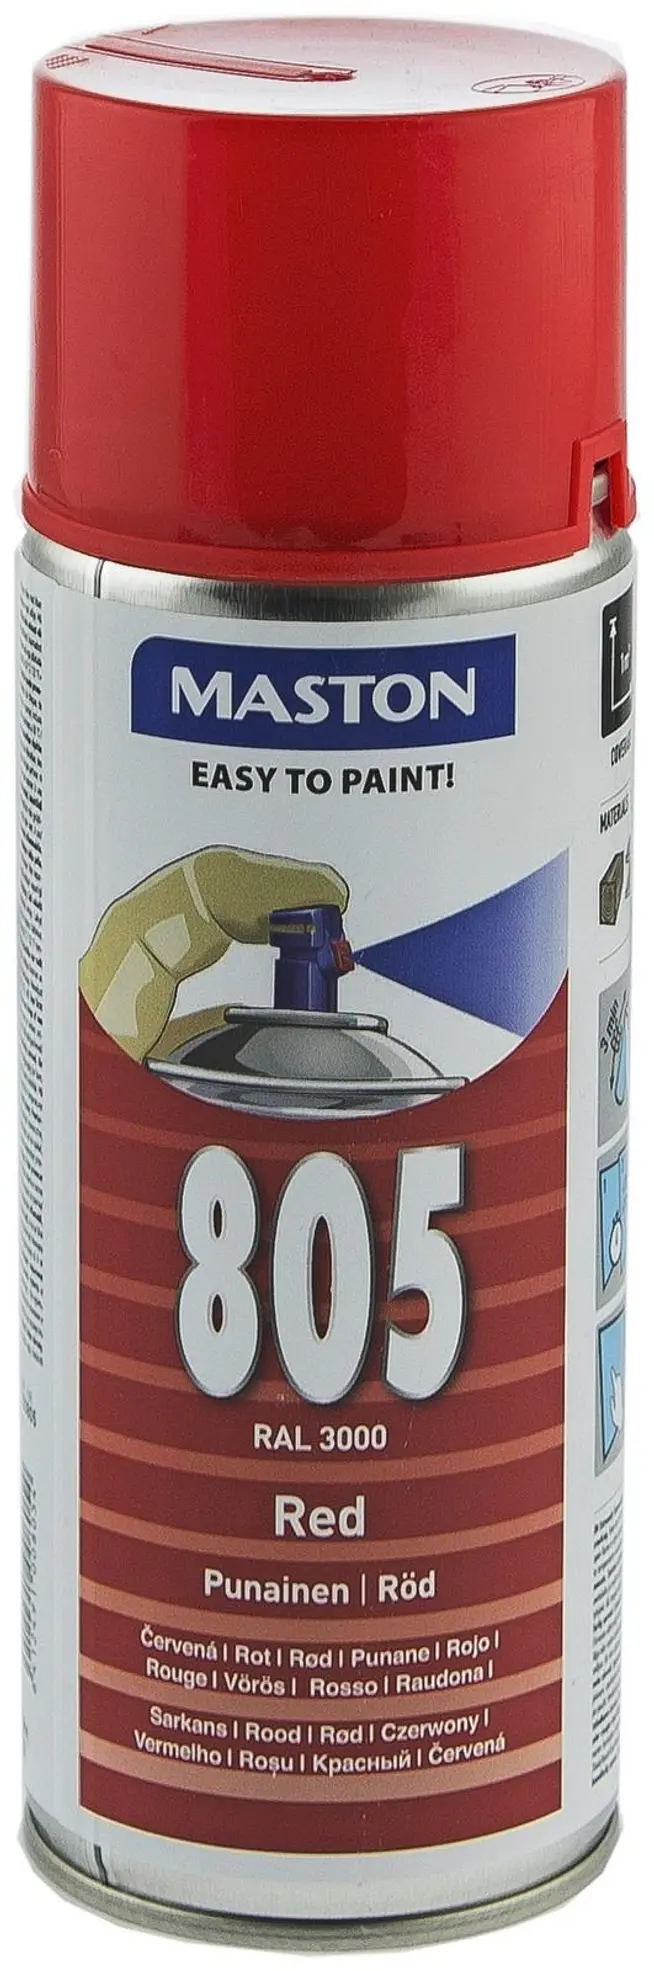 Maston spraymaali punainen 805 400ml RAL 3000